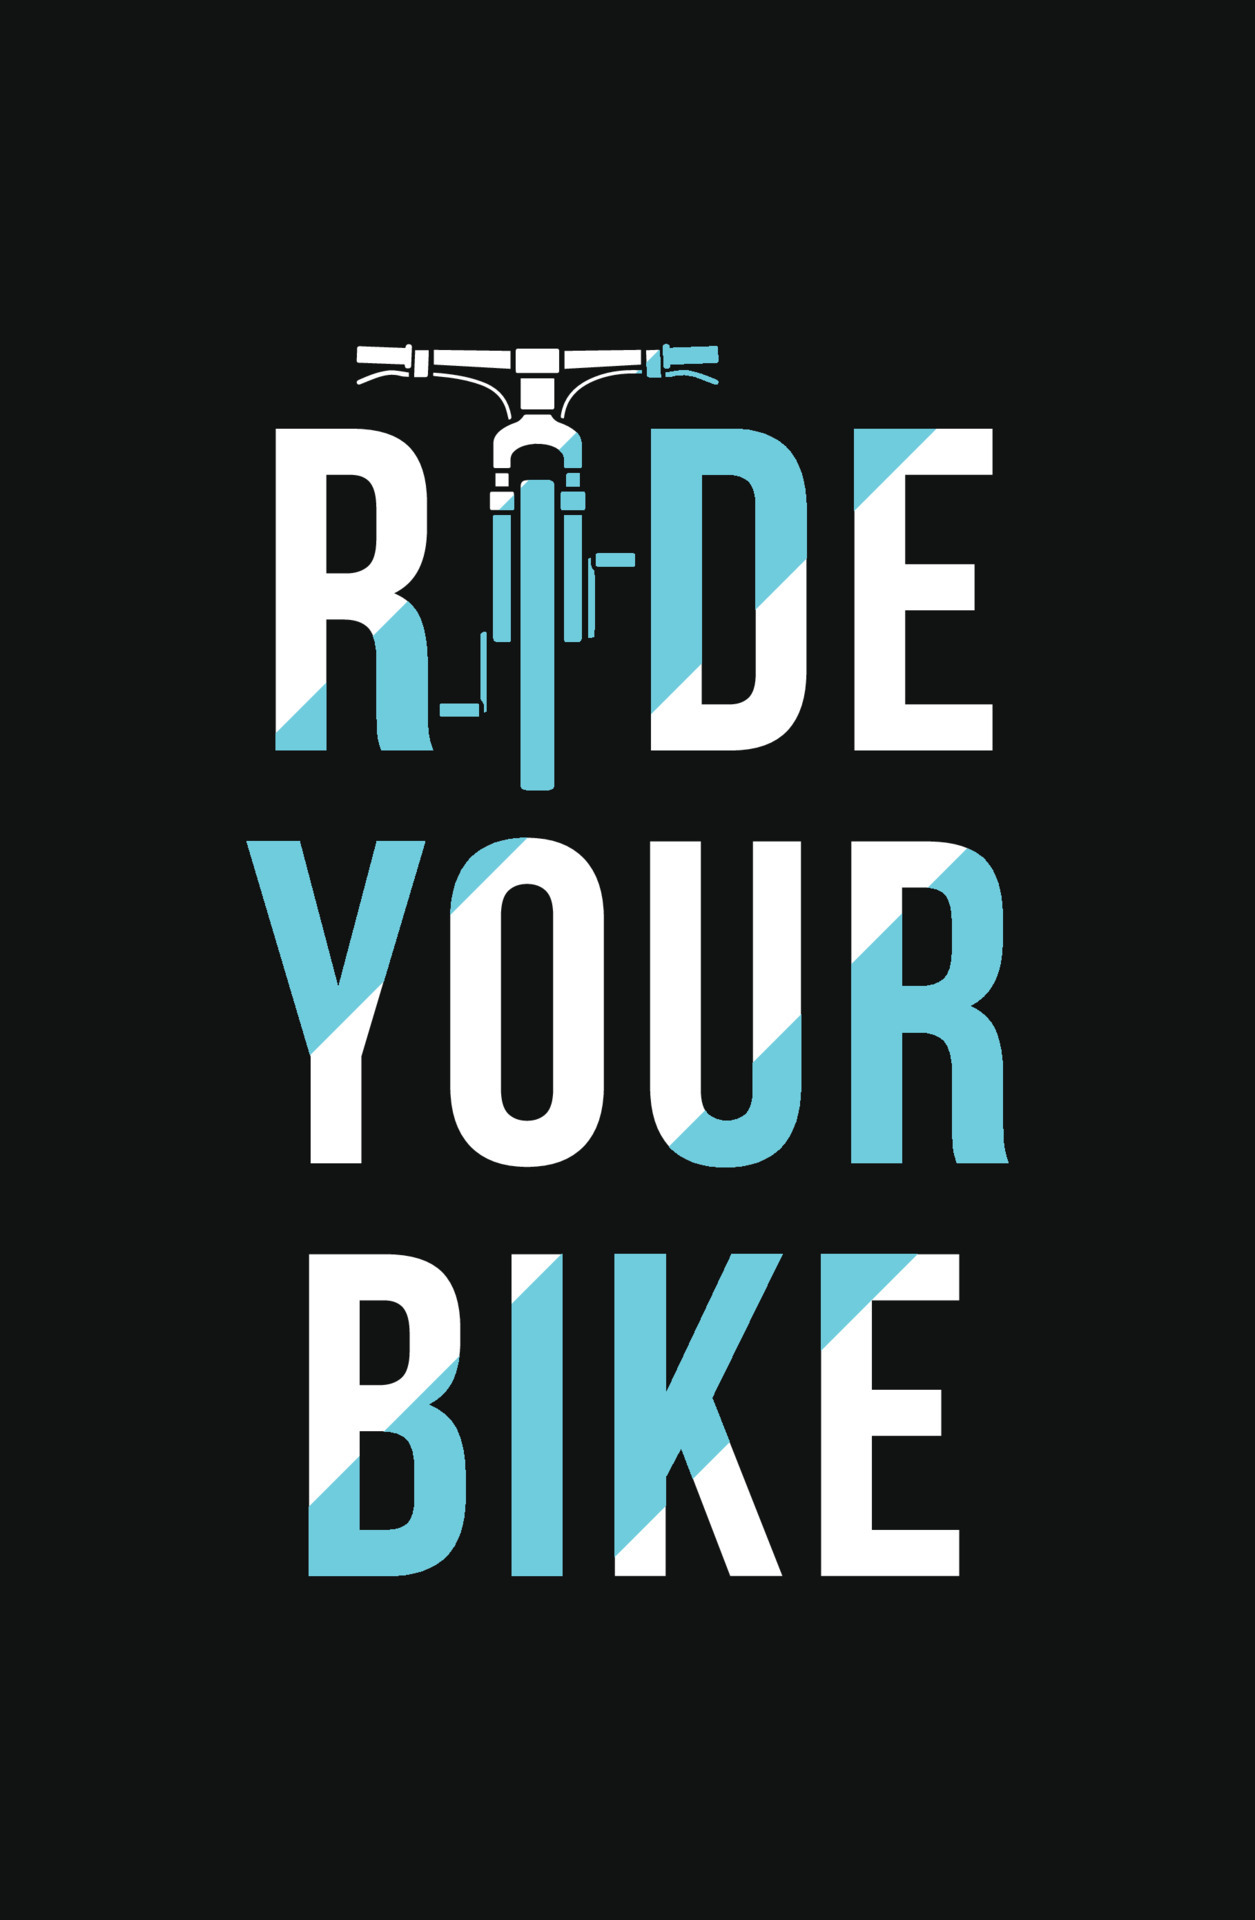 Bike t-shirt design, bike lettering t shirt design 4152844 Vector Art ...